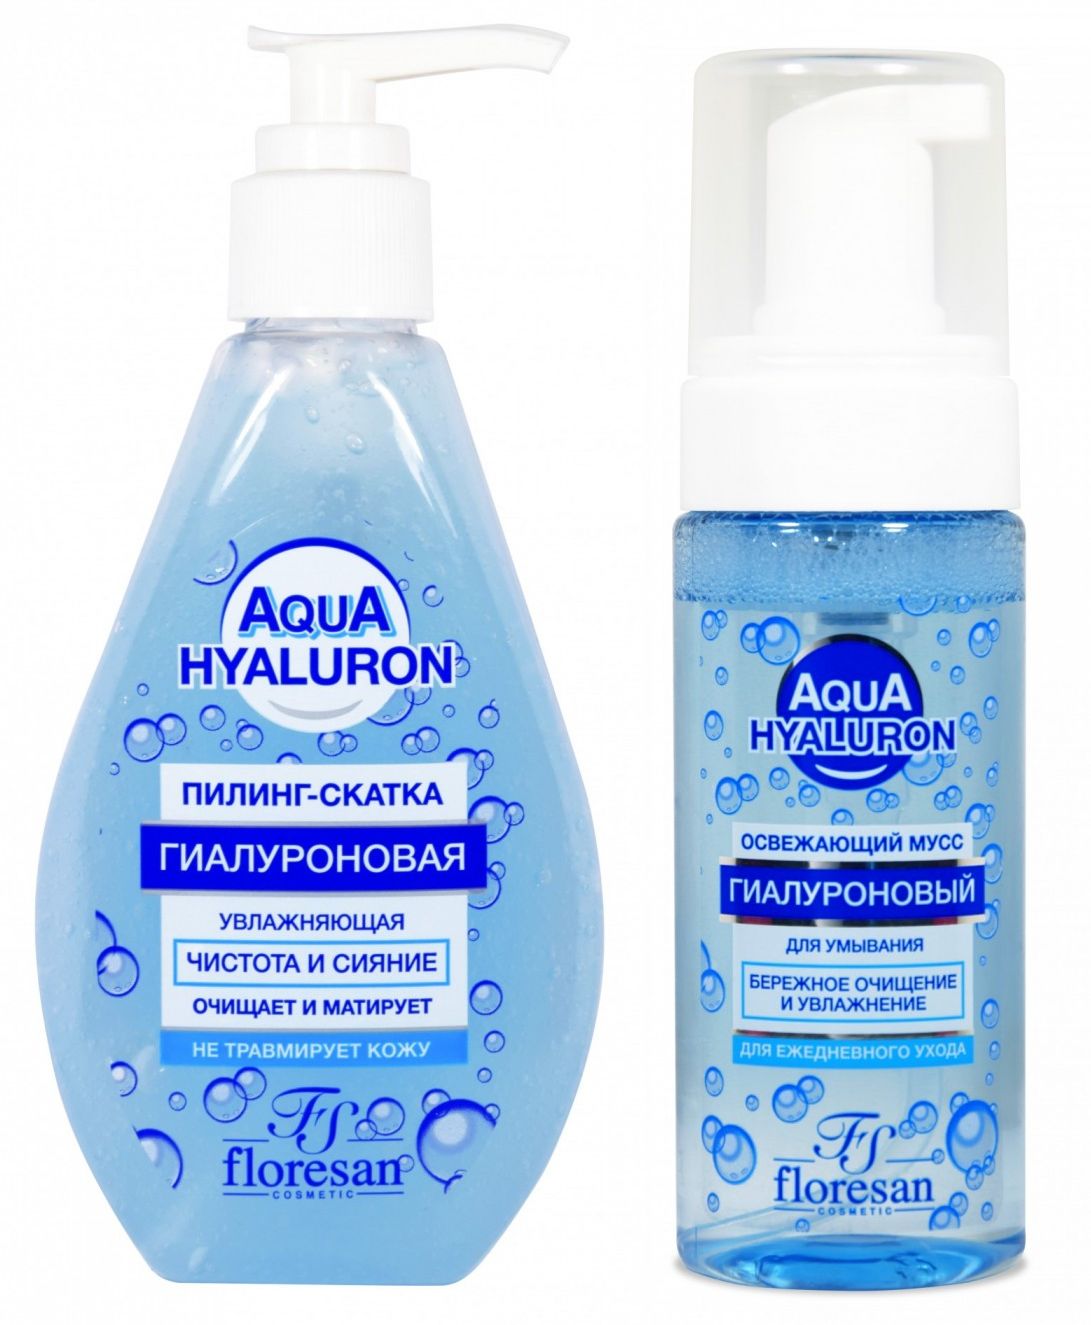 Набор Floresan Aqua Hyaluron пилинг-скатка и освежающий мусс для умывания 150 млх2 шт набор mixit makeup аква флюид с гиалуроновой кислотой 50мл и пенка мусс для умывания 200мл